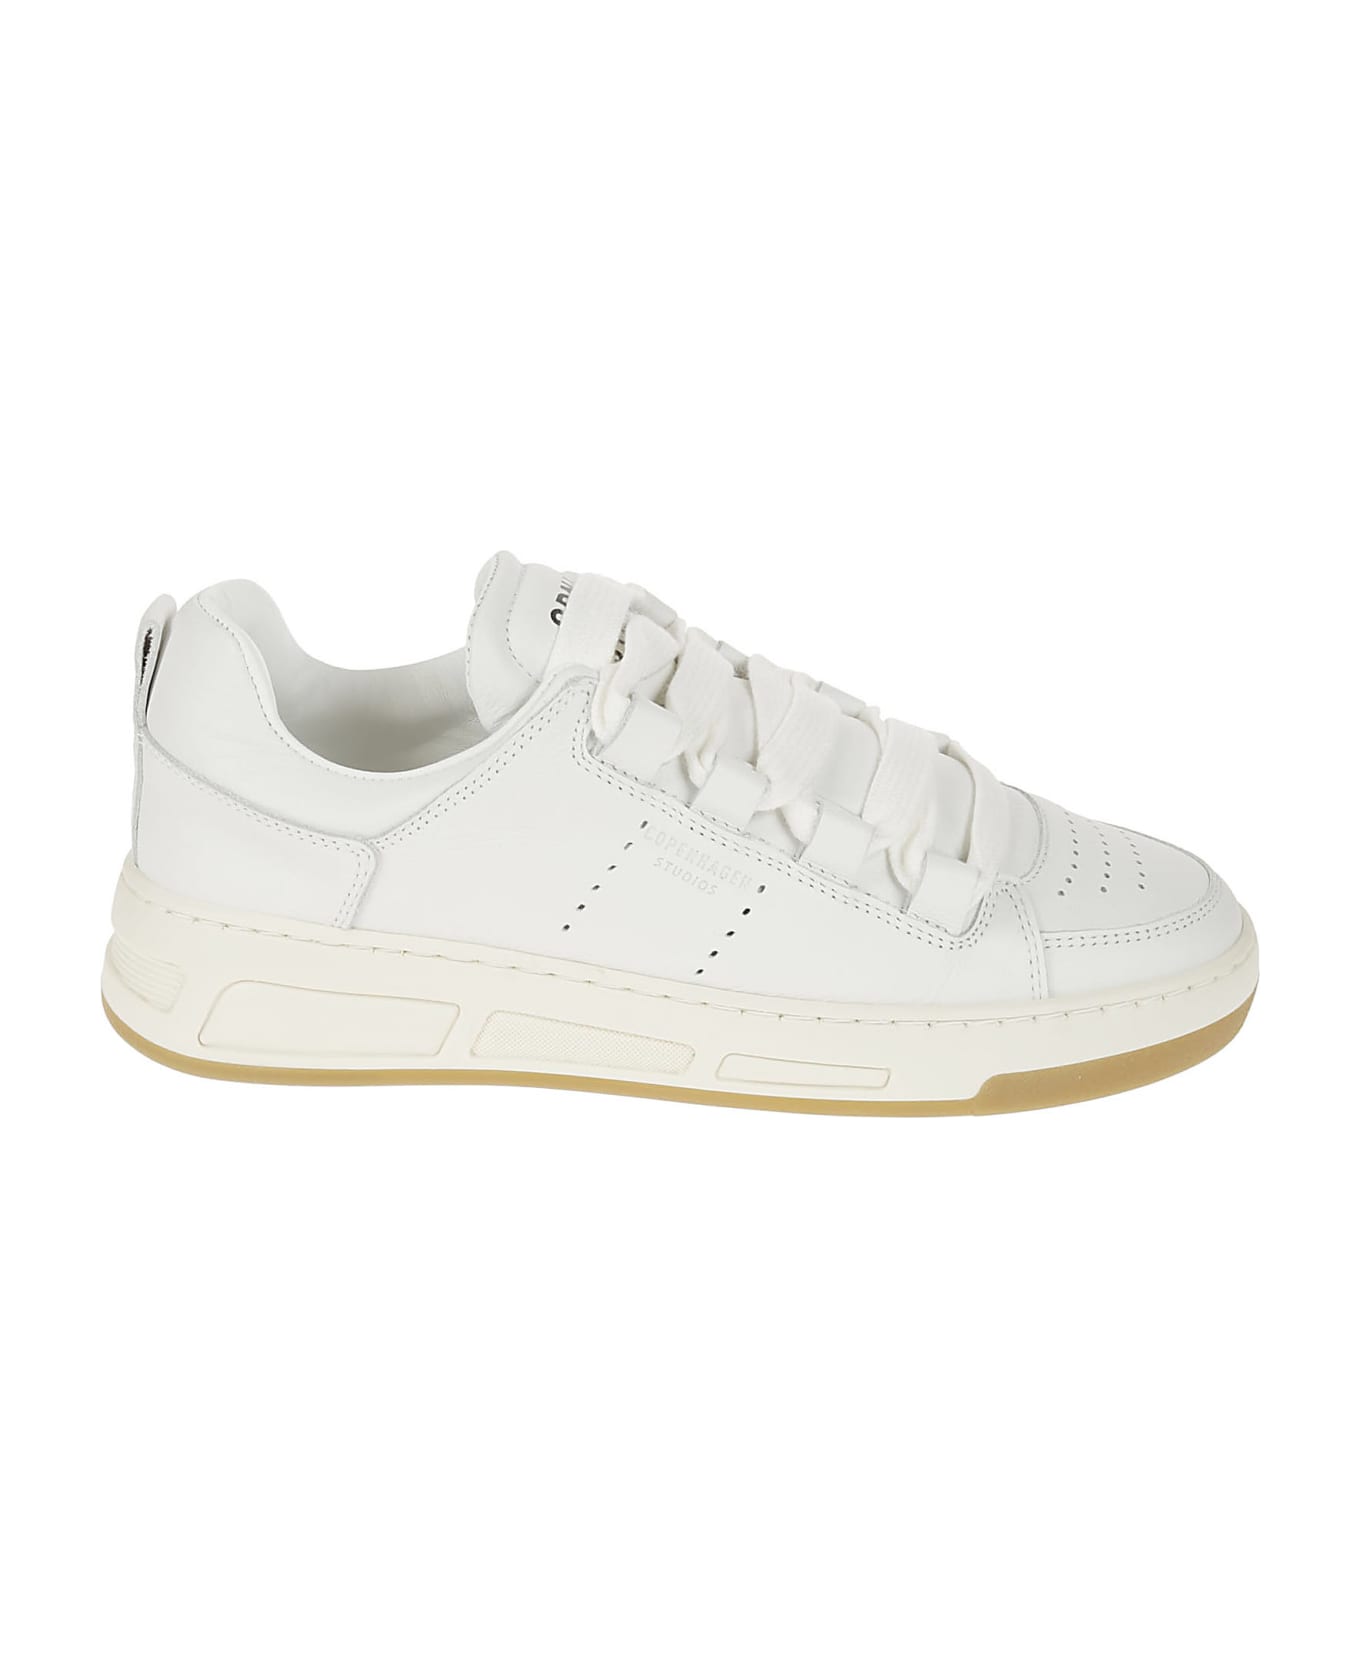 Copenhagen Leather Sneaker - White スニーカー